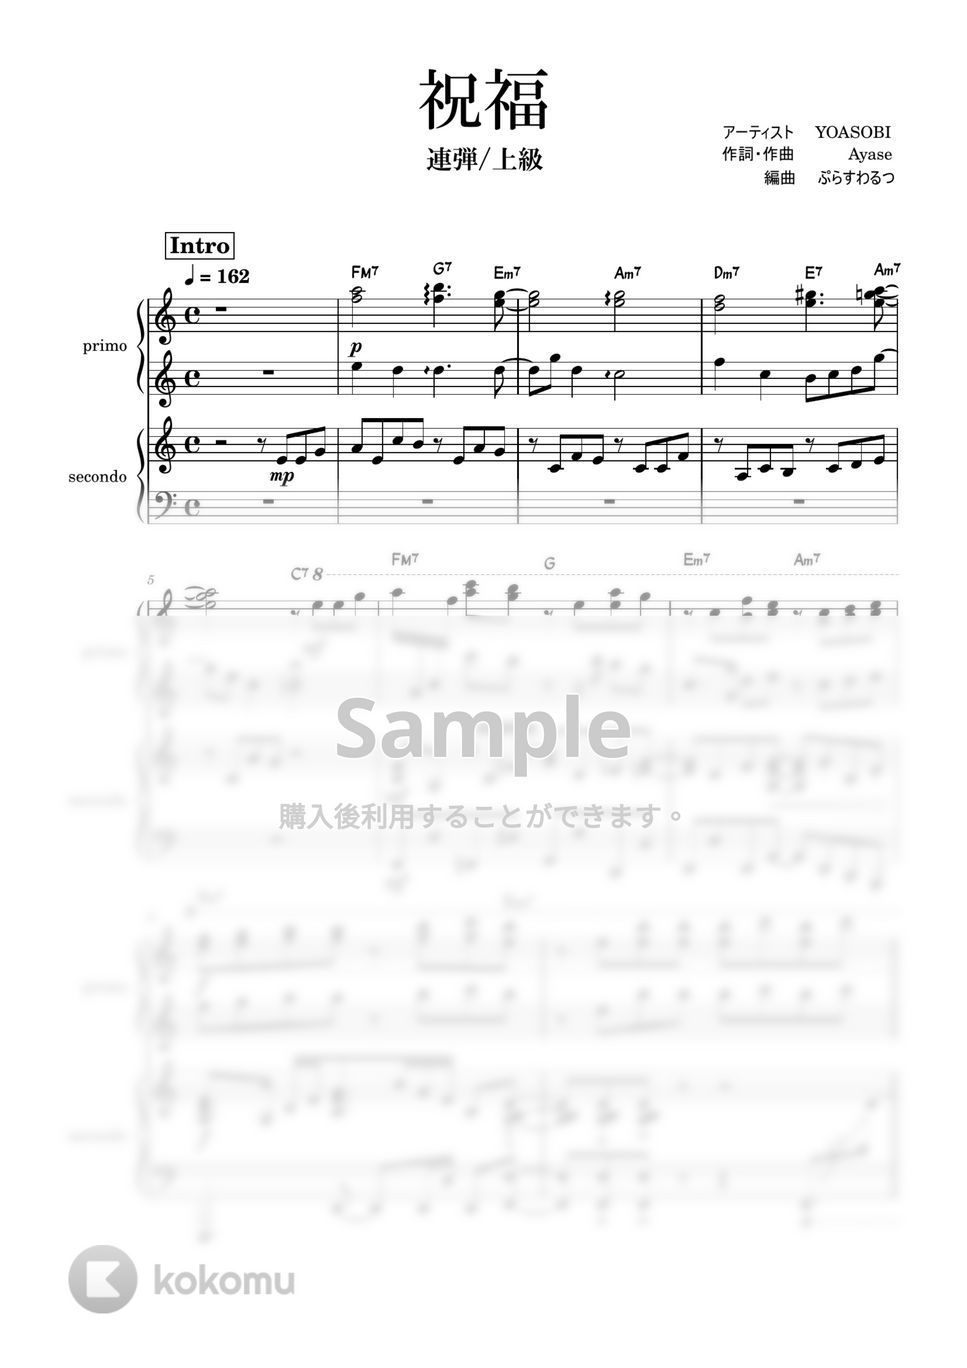 Ayase - 祝福 (ピアノ連弾/上級/コード付き) by ぷらすわるつ